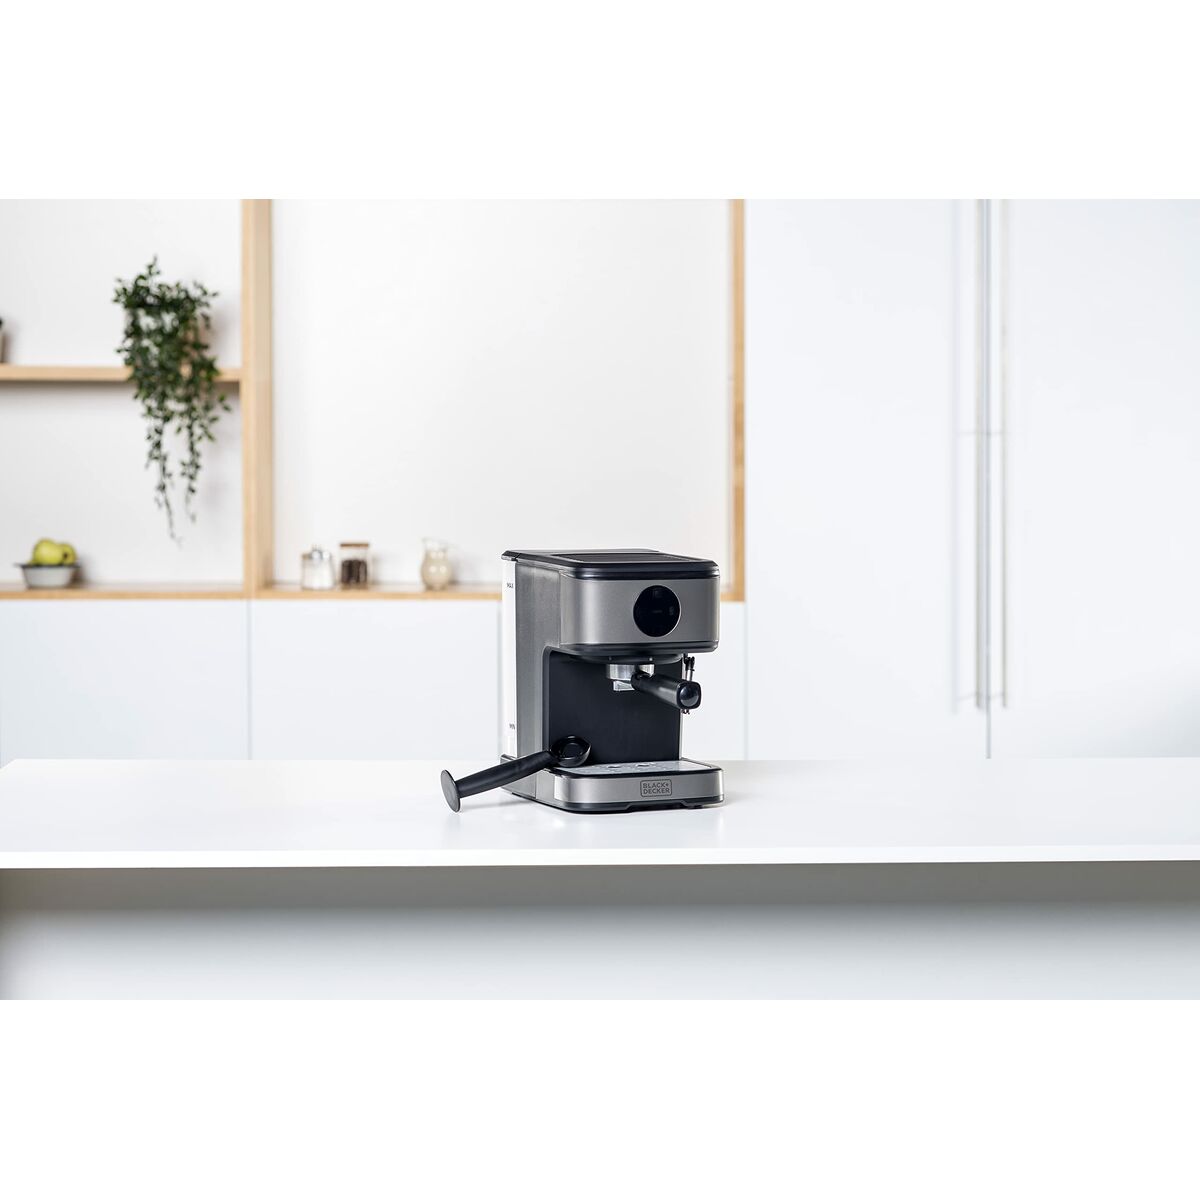 Superautomatische Kaffeemaschine Black & Decker BXCO850E Schwarz Silberfarben 850 W 20 bar 1,2 L 2 Kopper